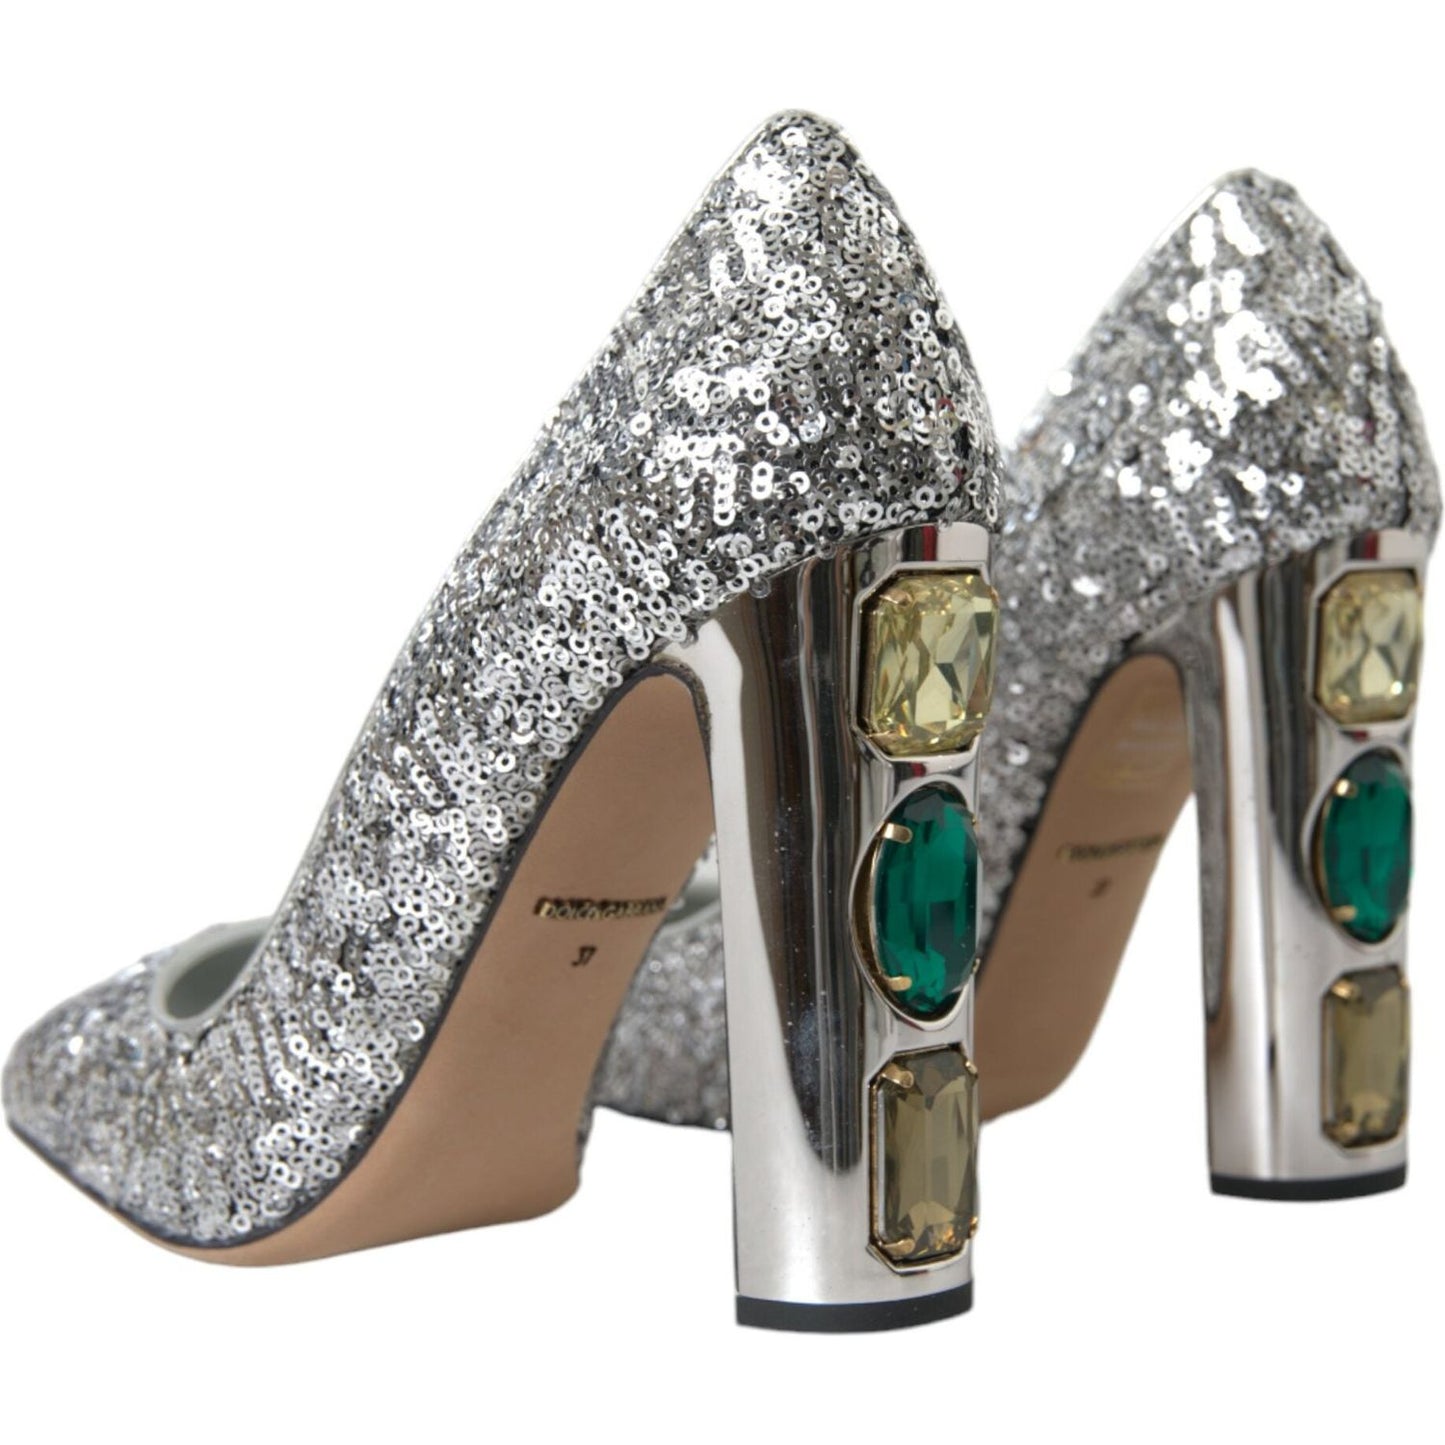 Dolce & Gabbana Silver Sequin Embellished Heels Pumps Shoes silver-sequin-embellished-heels-pumps-shoes